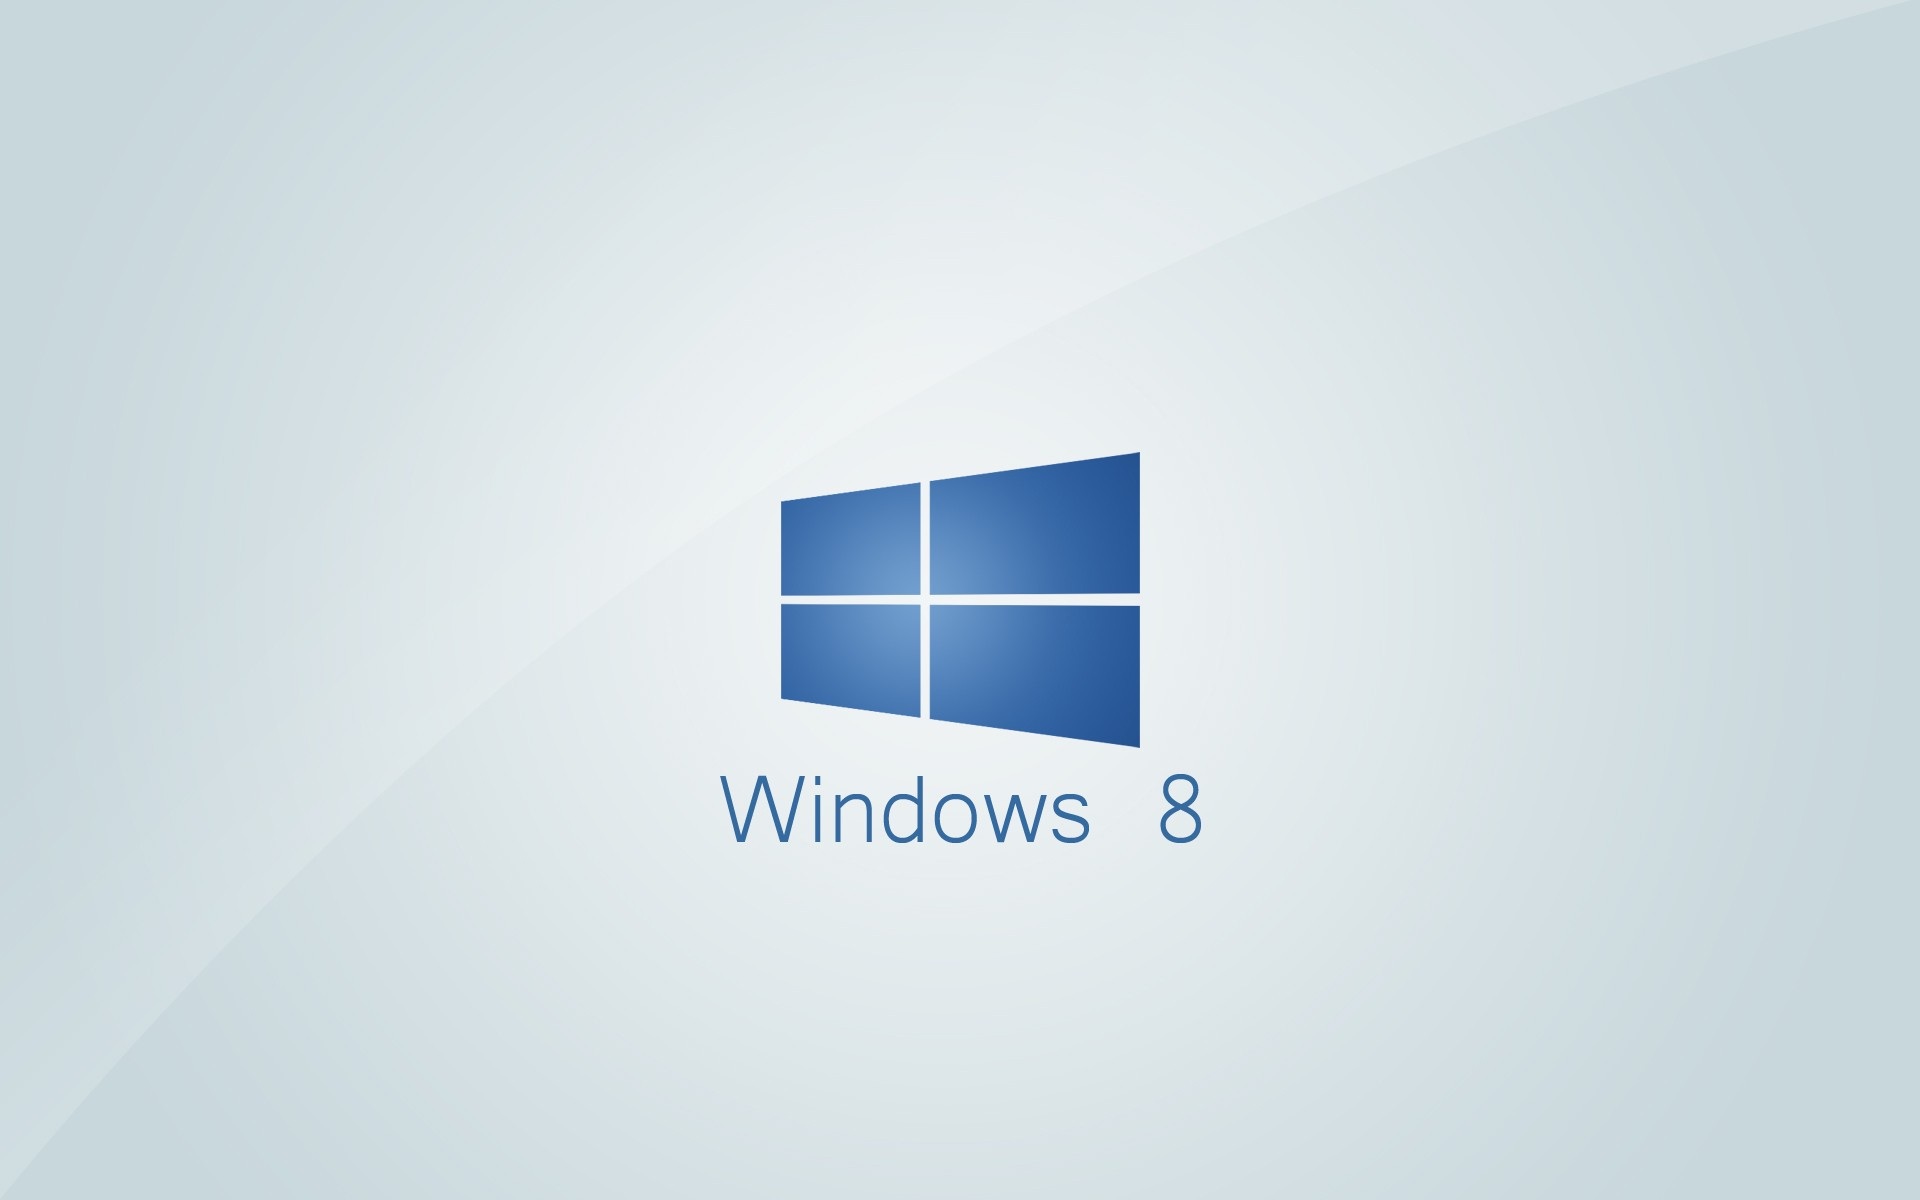 Windows Blue Logo Wallpaper Stock Photos